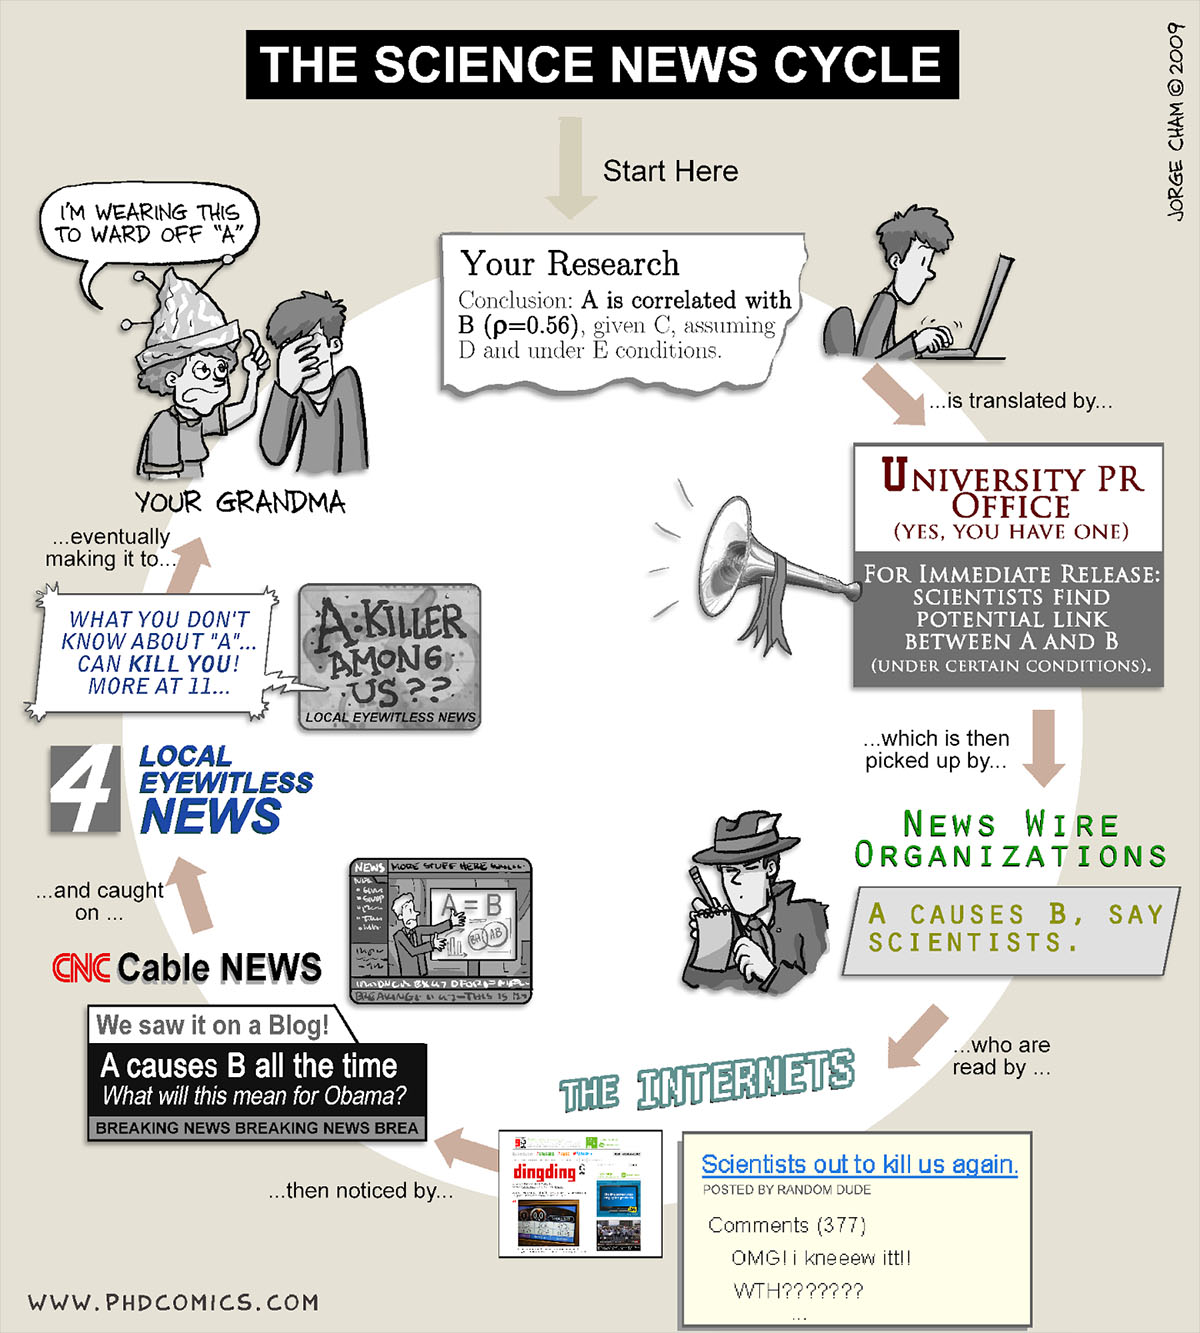 phd comics science news cycle